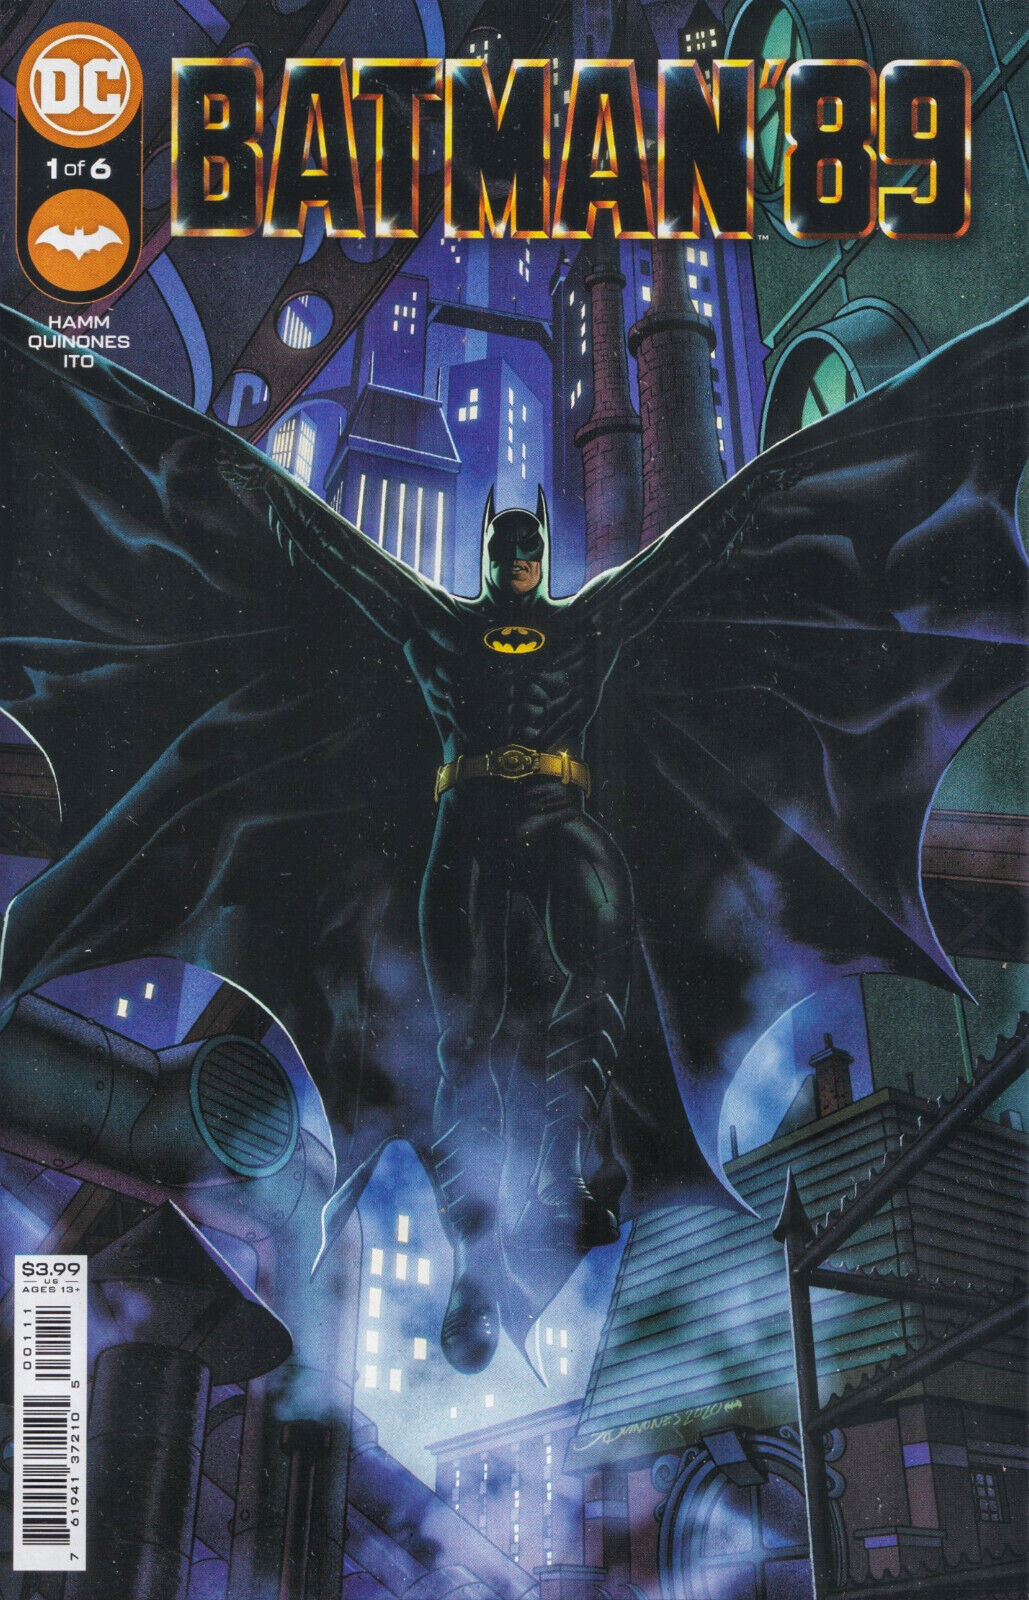 BATMAN '89 #1 (QUINONES MAIN COVER)(2021) COMIC BOOK ~ DC Comics ~ NM